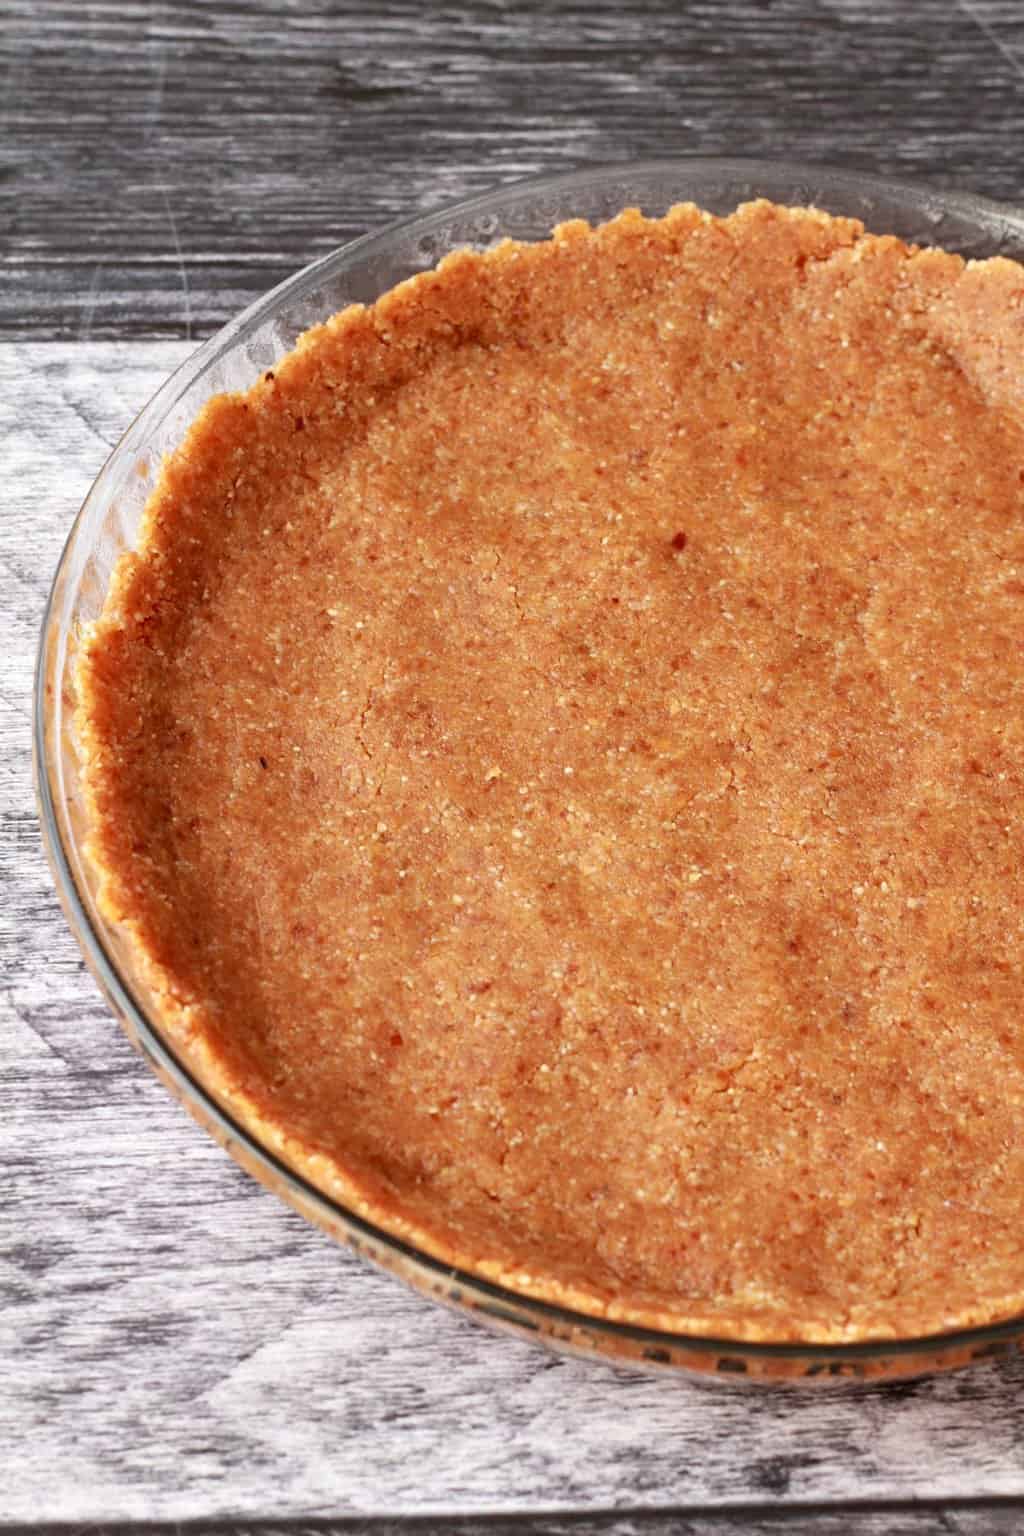 Walnut, date and coconut crust for a Vegan Coconut Cream Pie. #vegan #lovingitvegan #dessert #pie